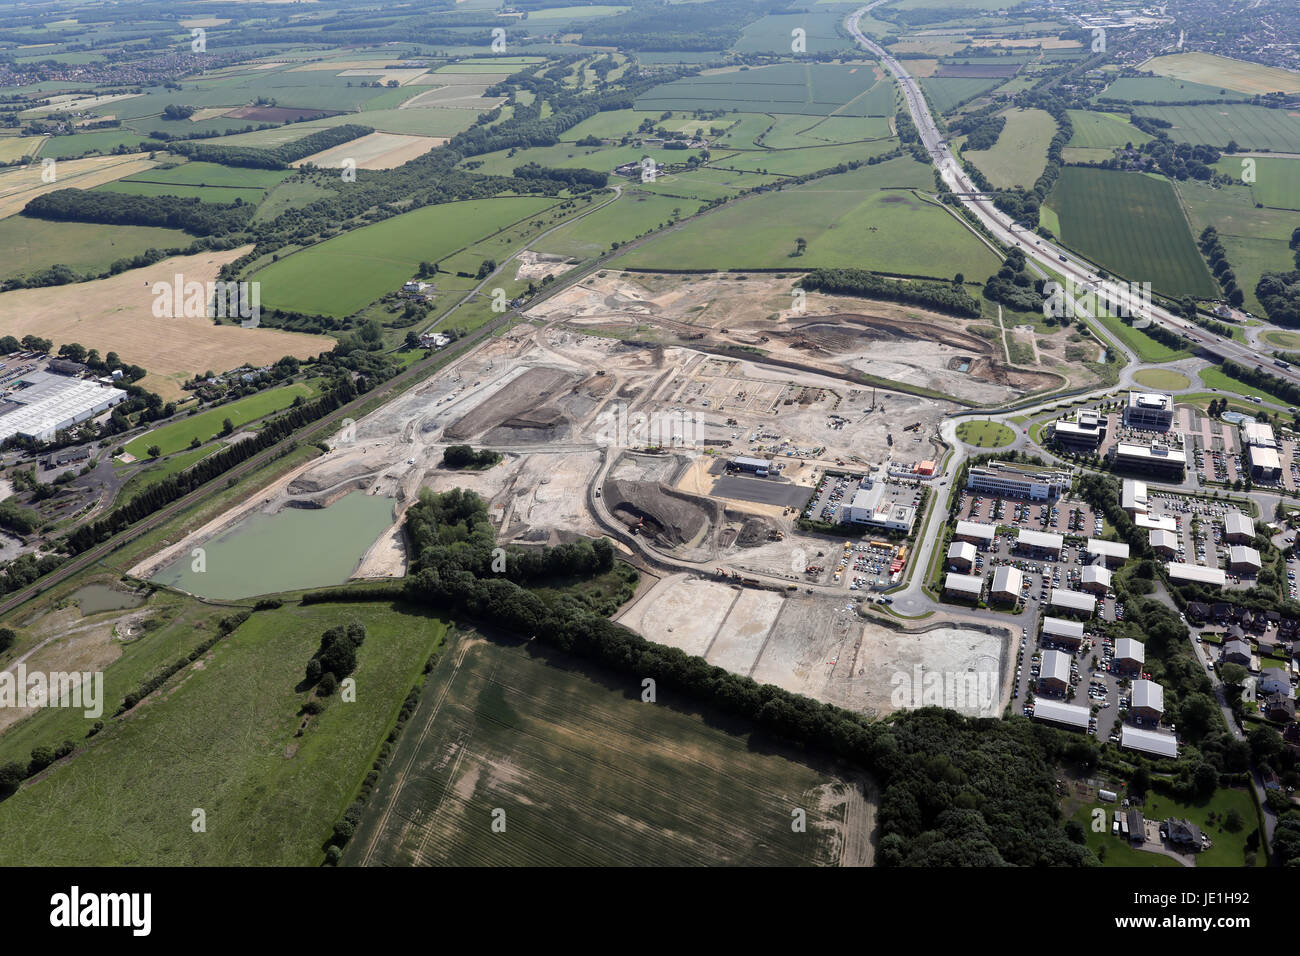 Vue aérienne d'une extension à Thorpe Park, Colton près de Leeds, Royaume-Uni Banque D'Images